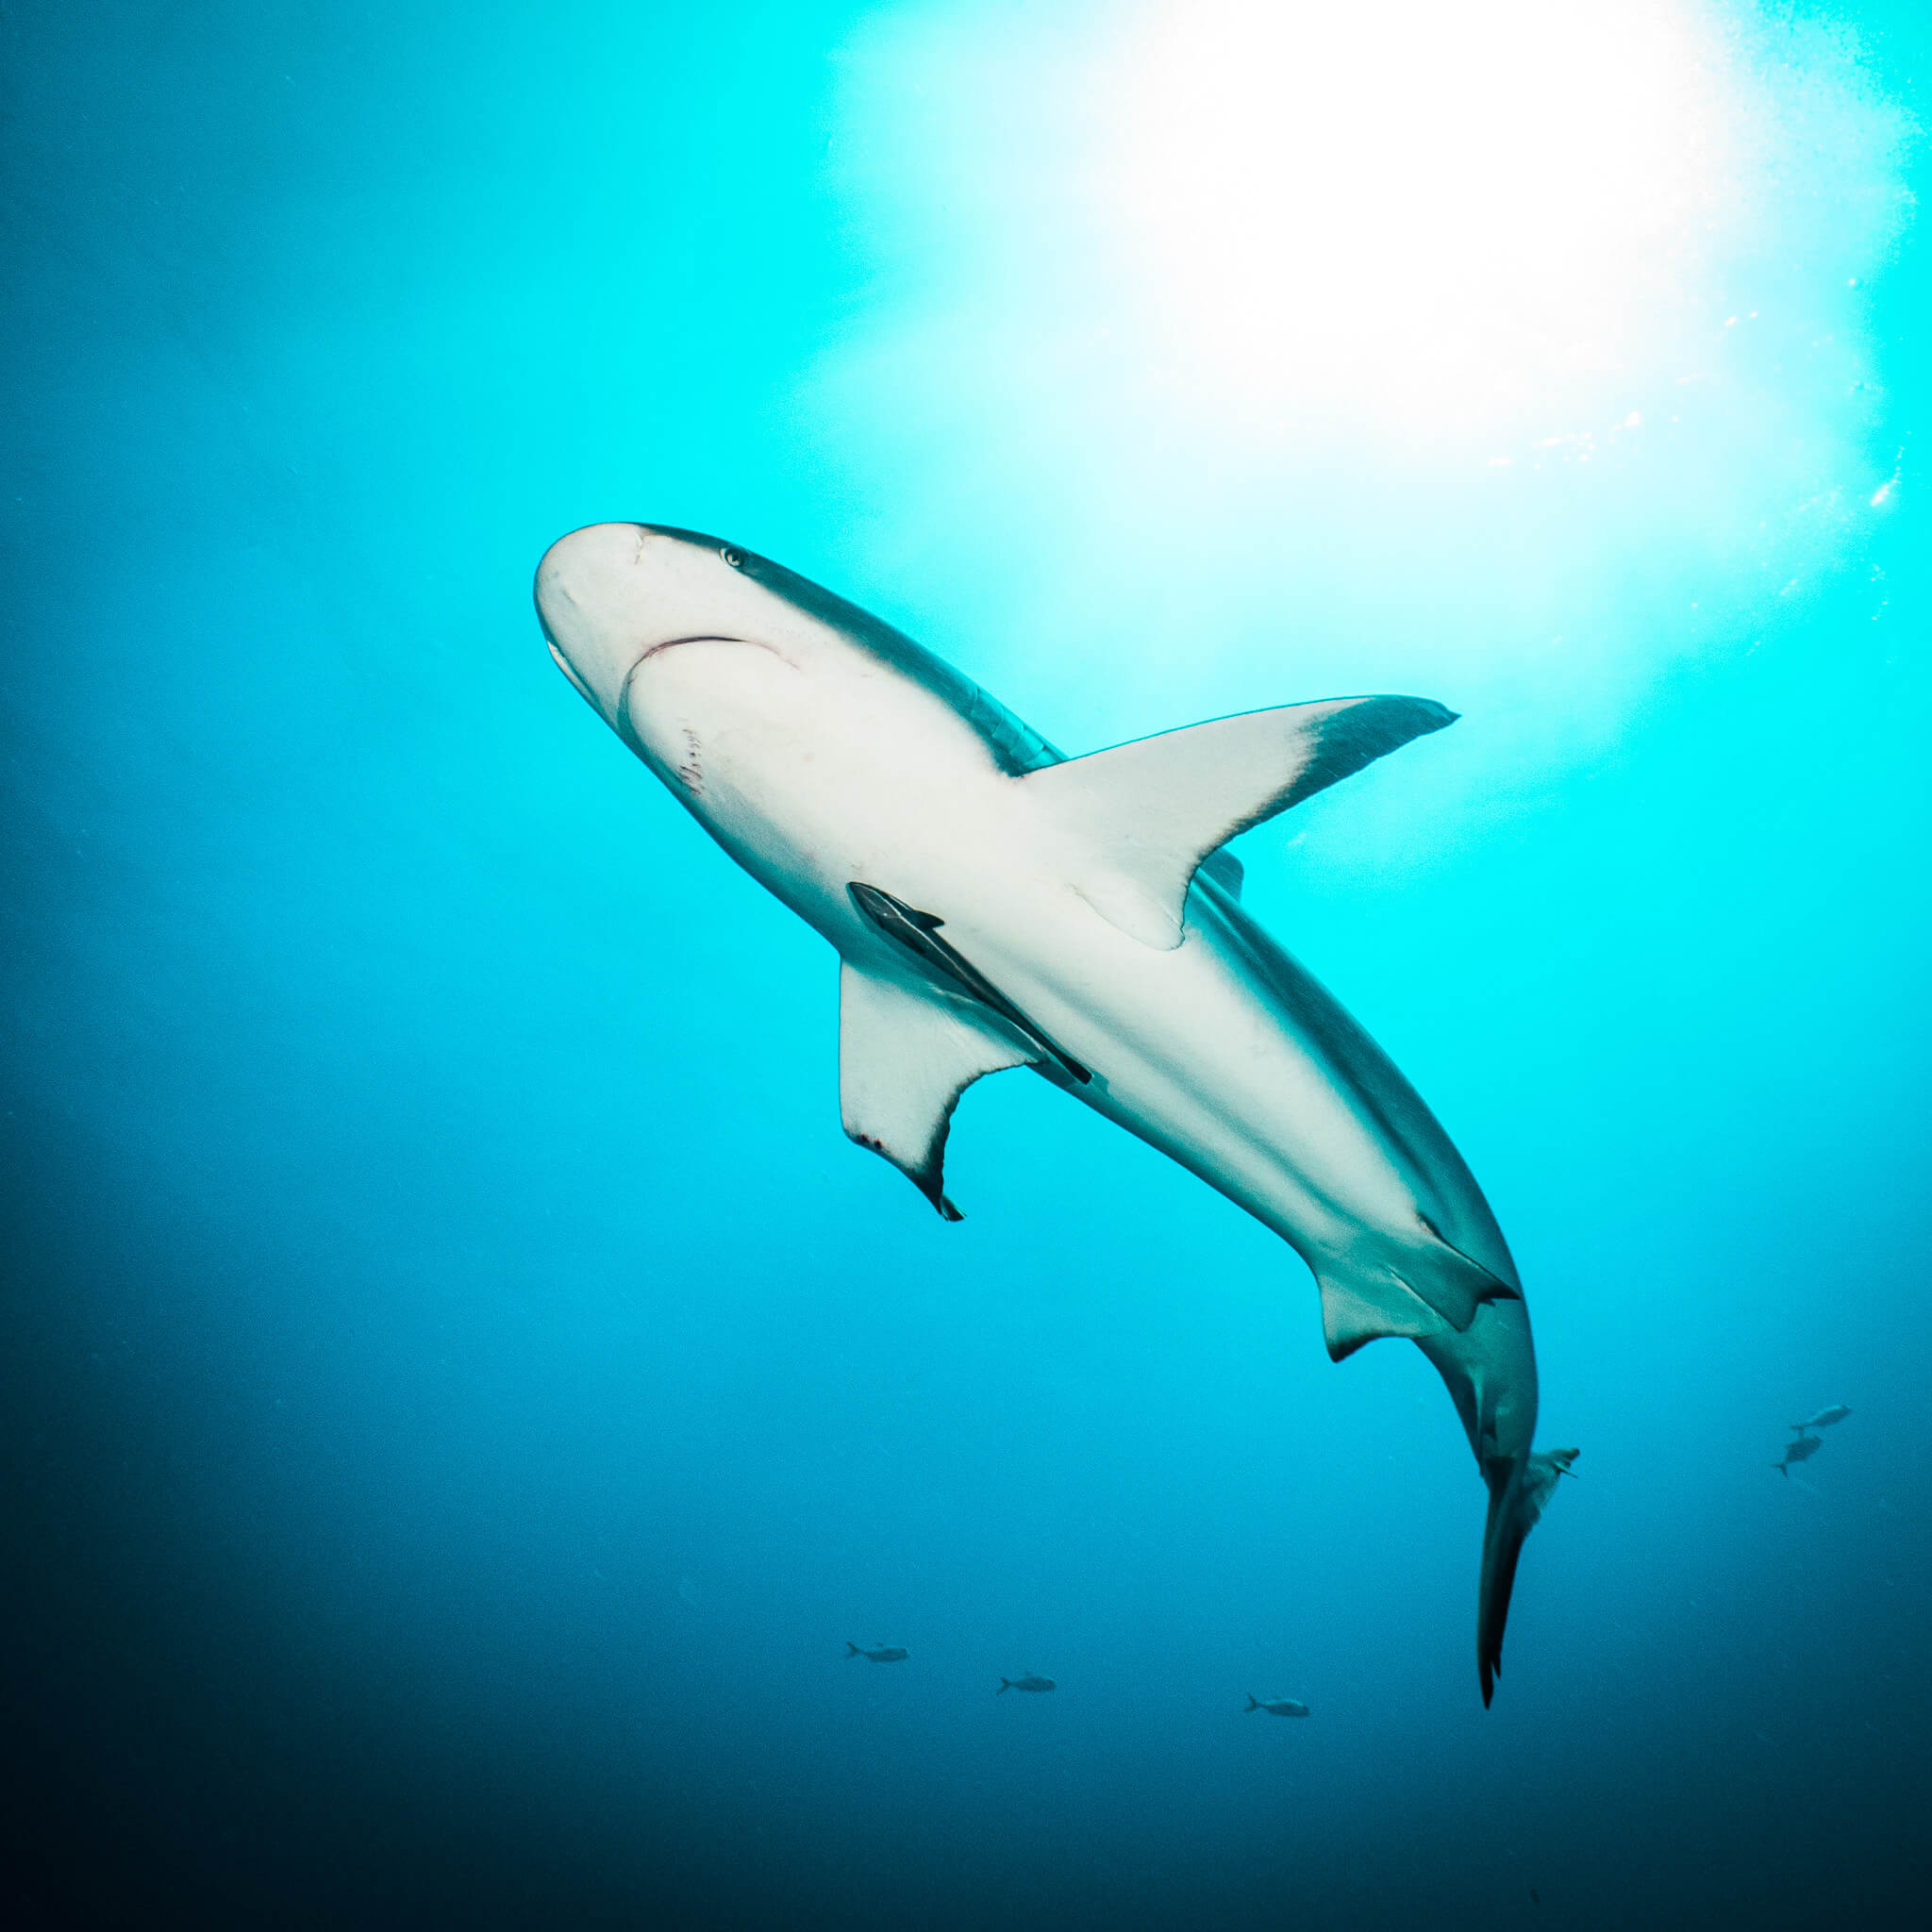 A Caribbean reef shark swims overhead